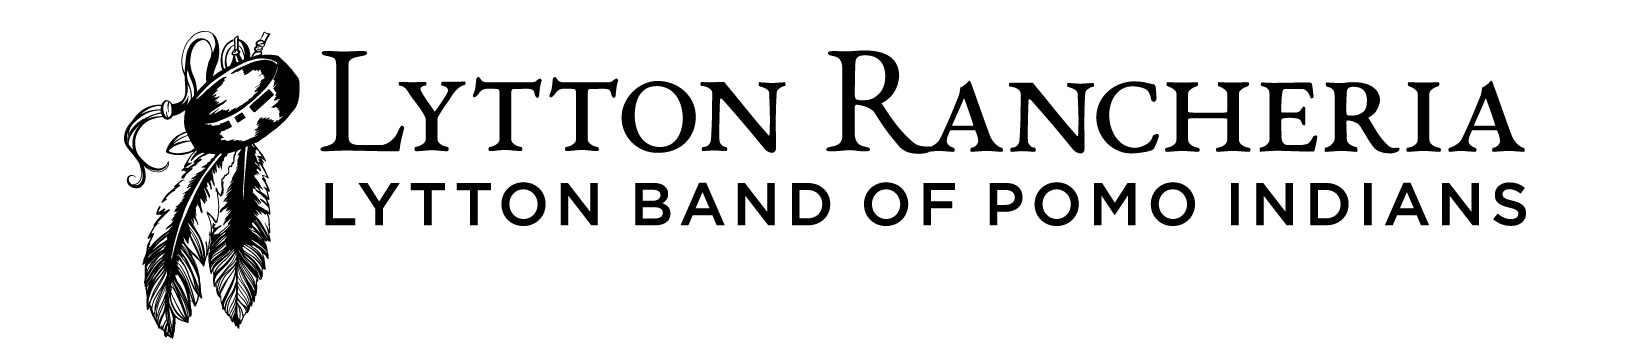 Lytton Rancheria Lytton Band of Pomo Indians Logo